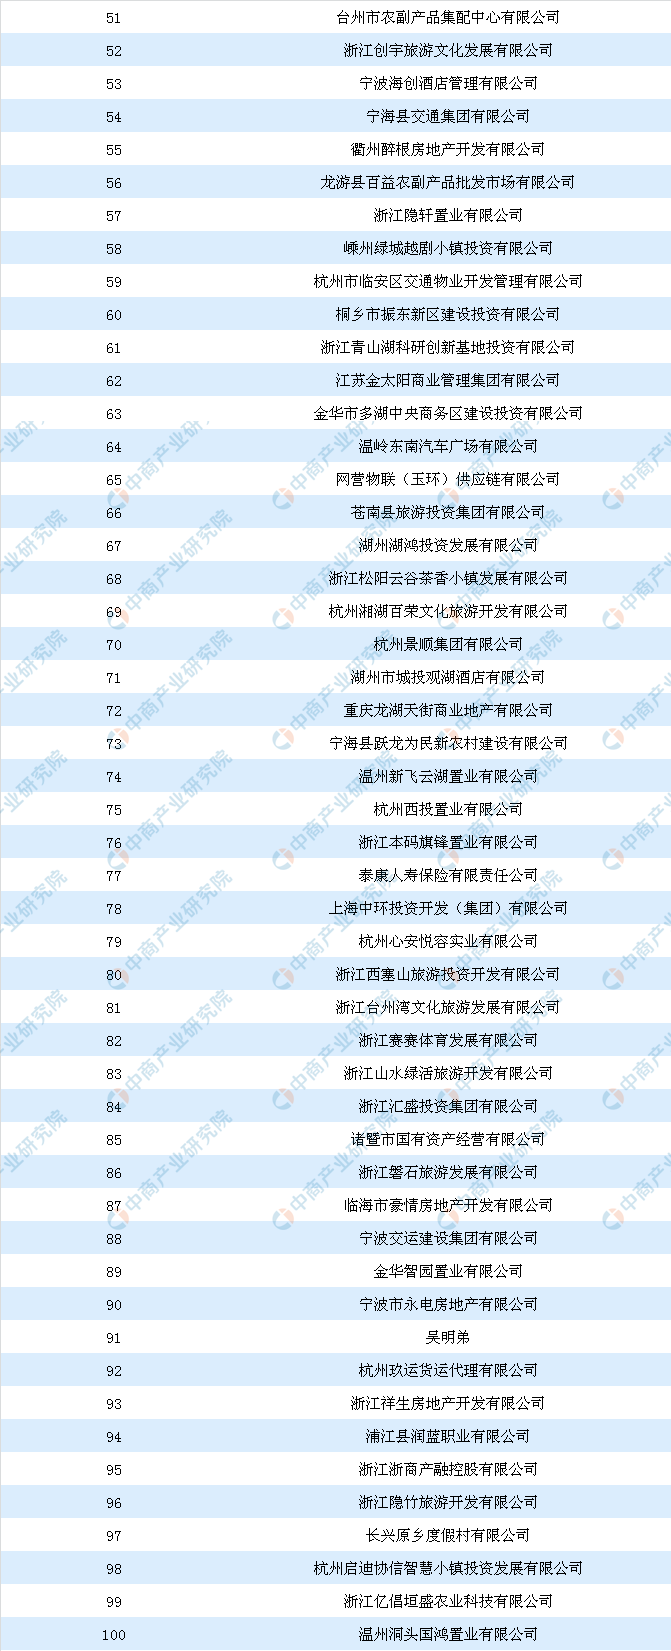 商业地产情报:2018年浙江省商业用地拿地面积